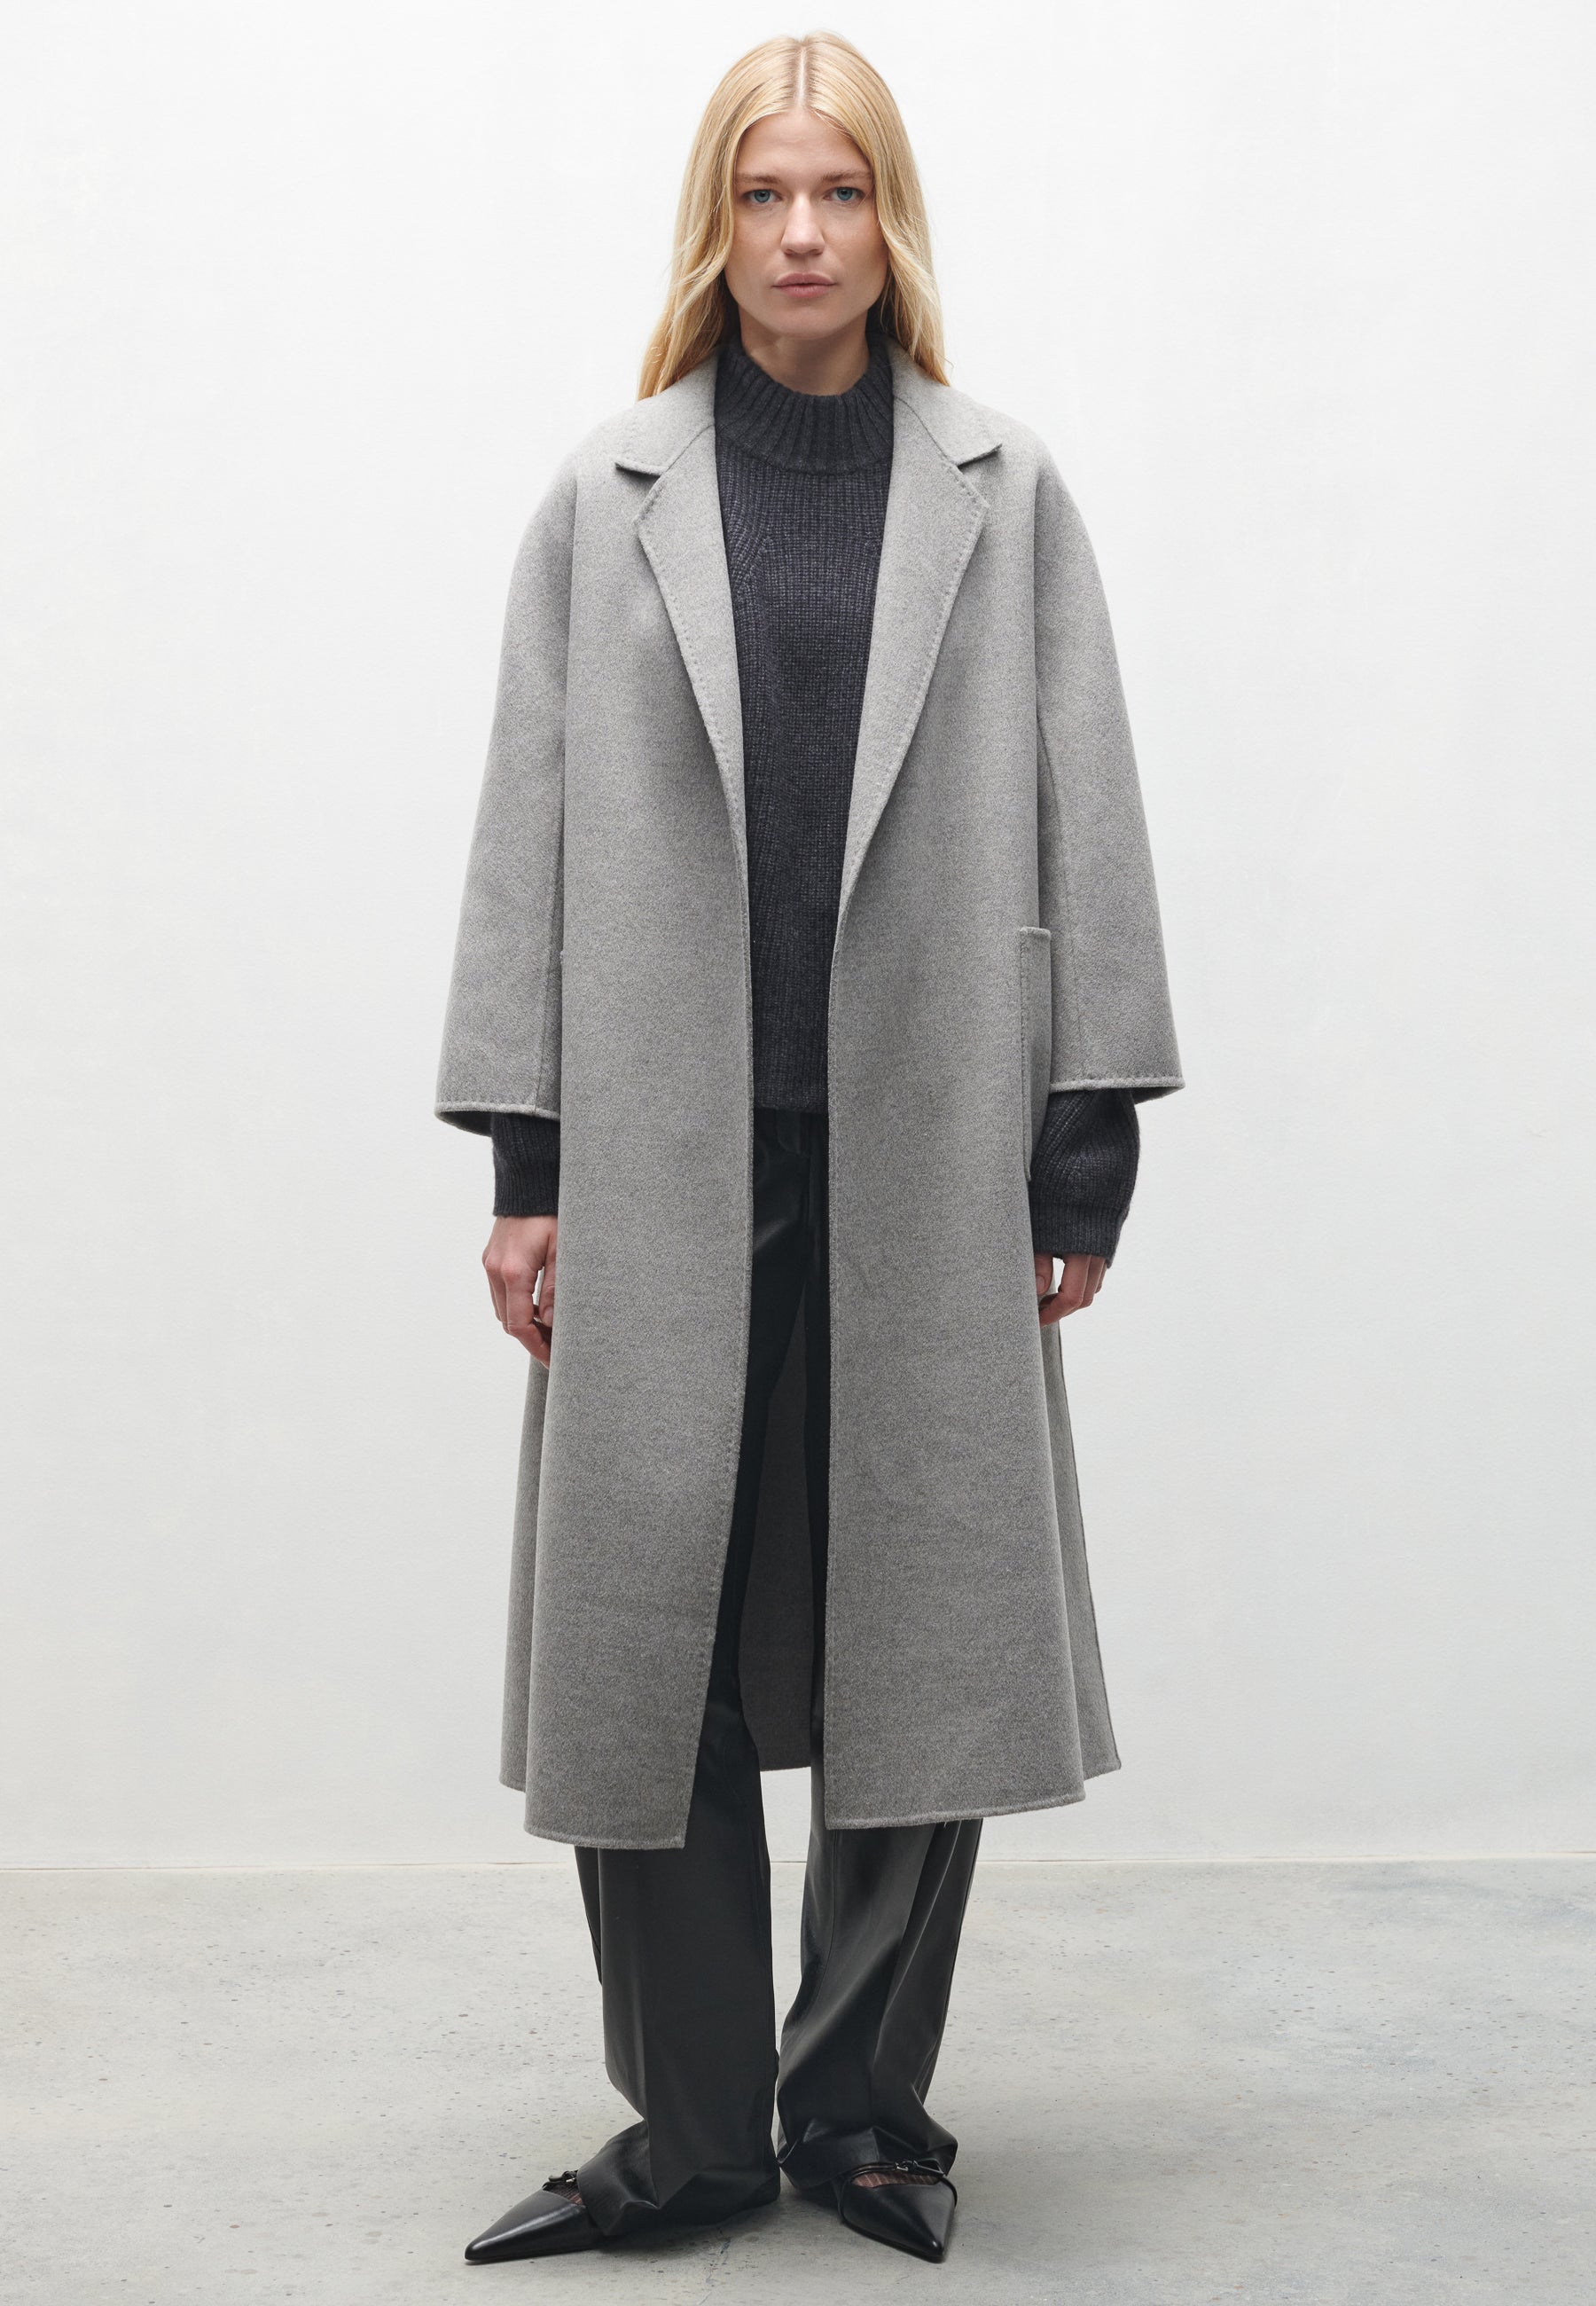 SEGURET | Long wool coat – armastore.com